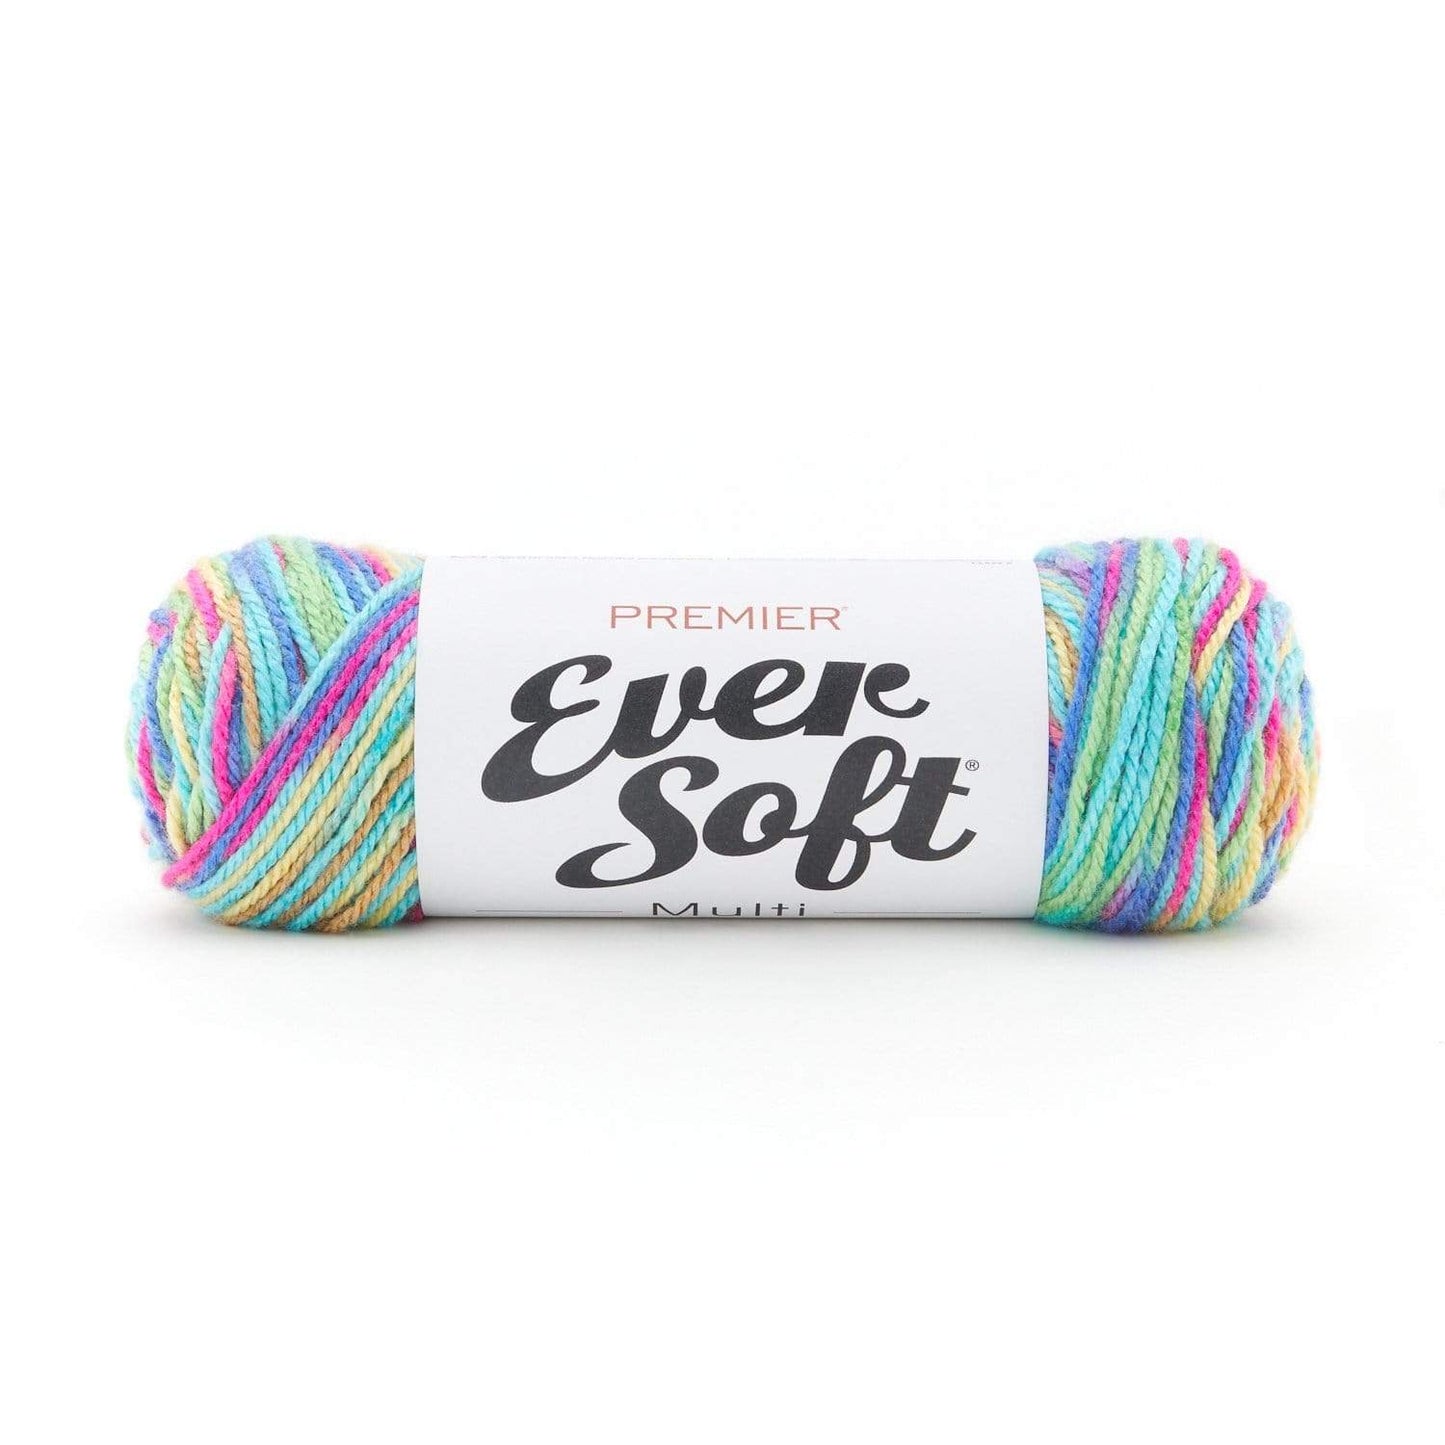 Premier - Ever Soft Multi Yarn